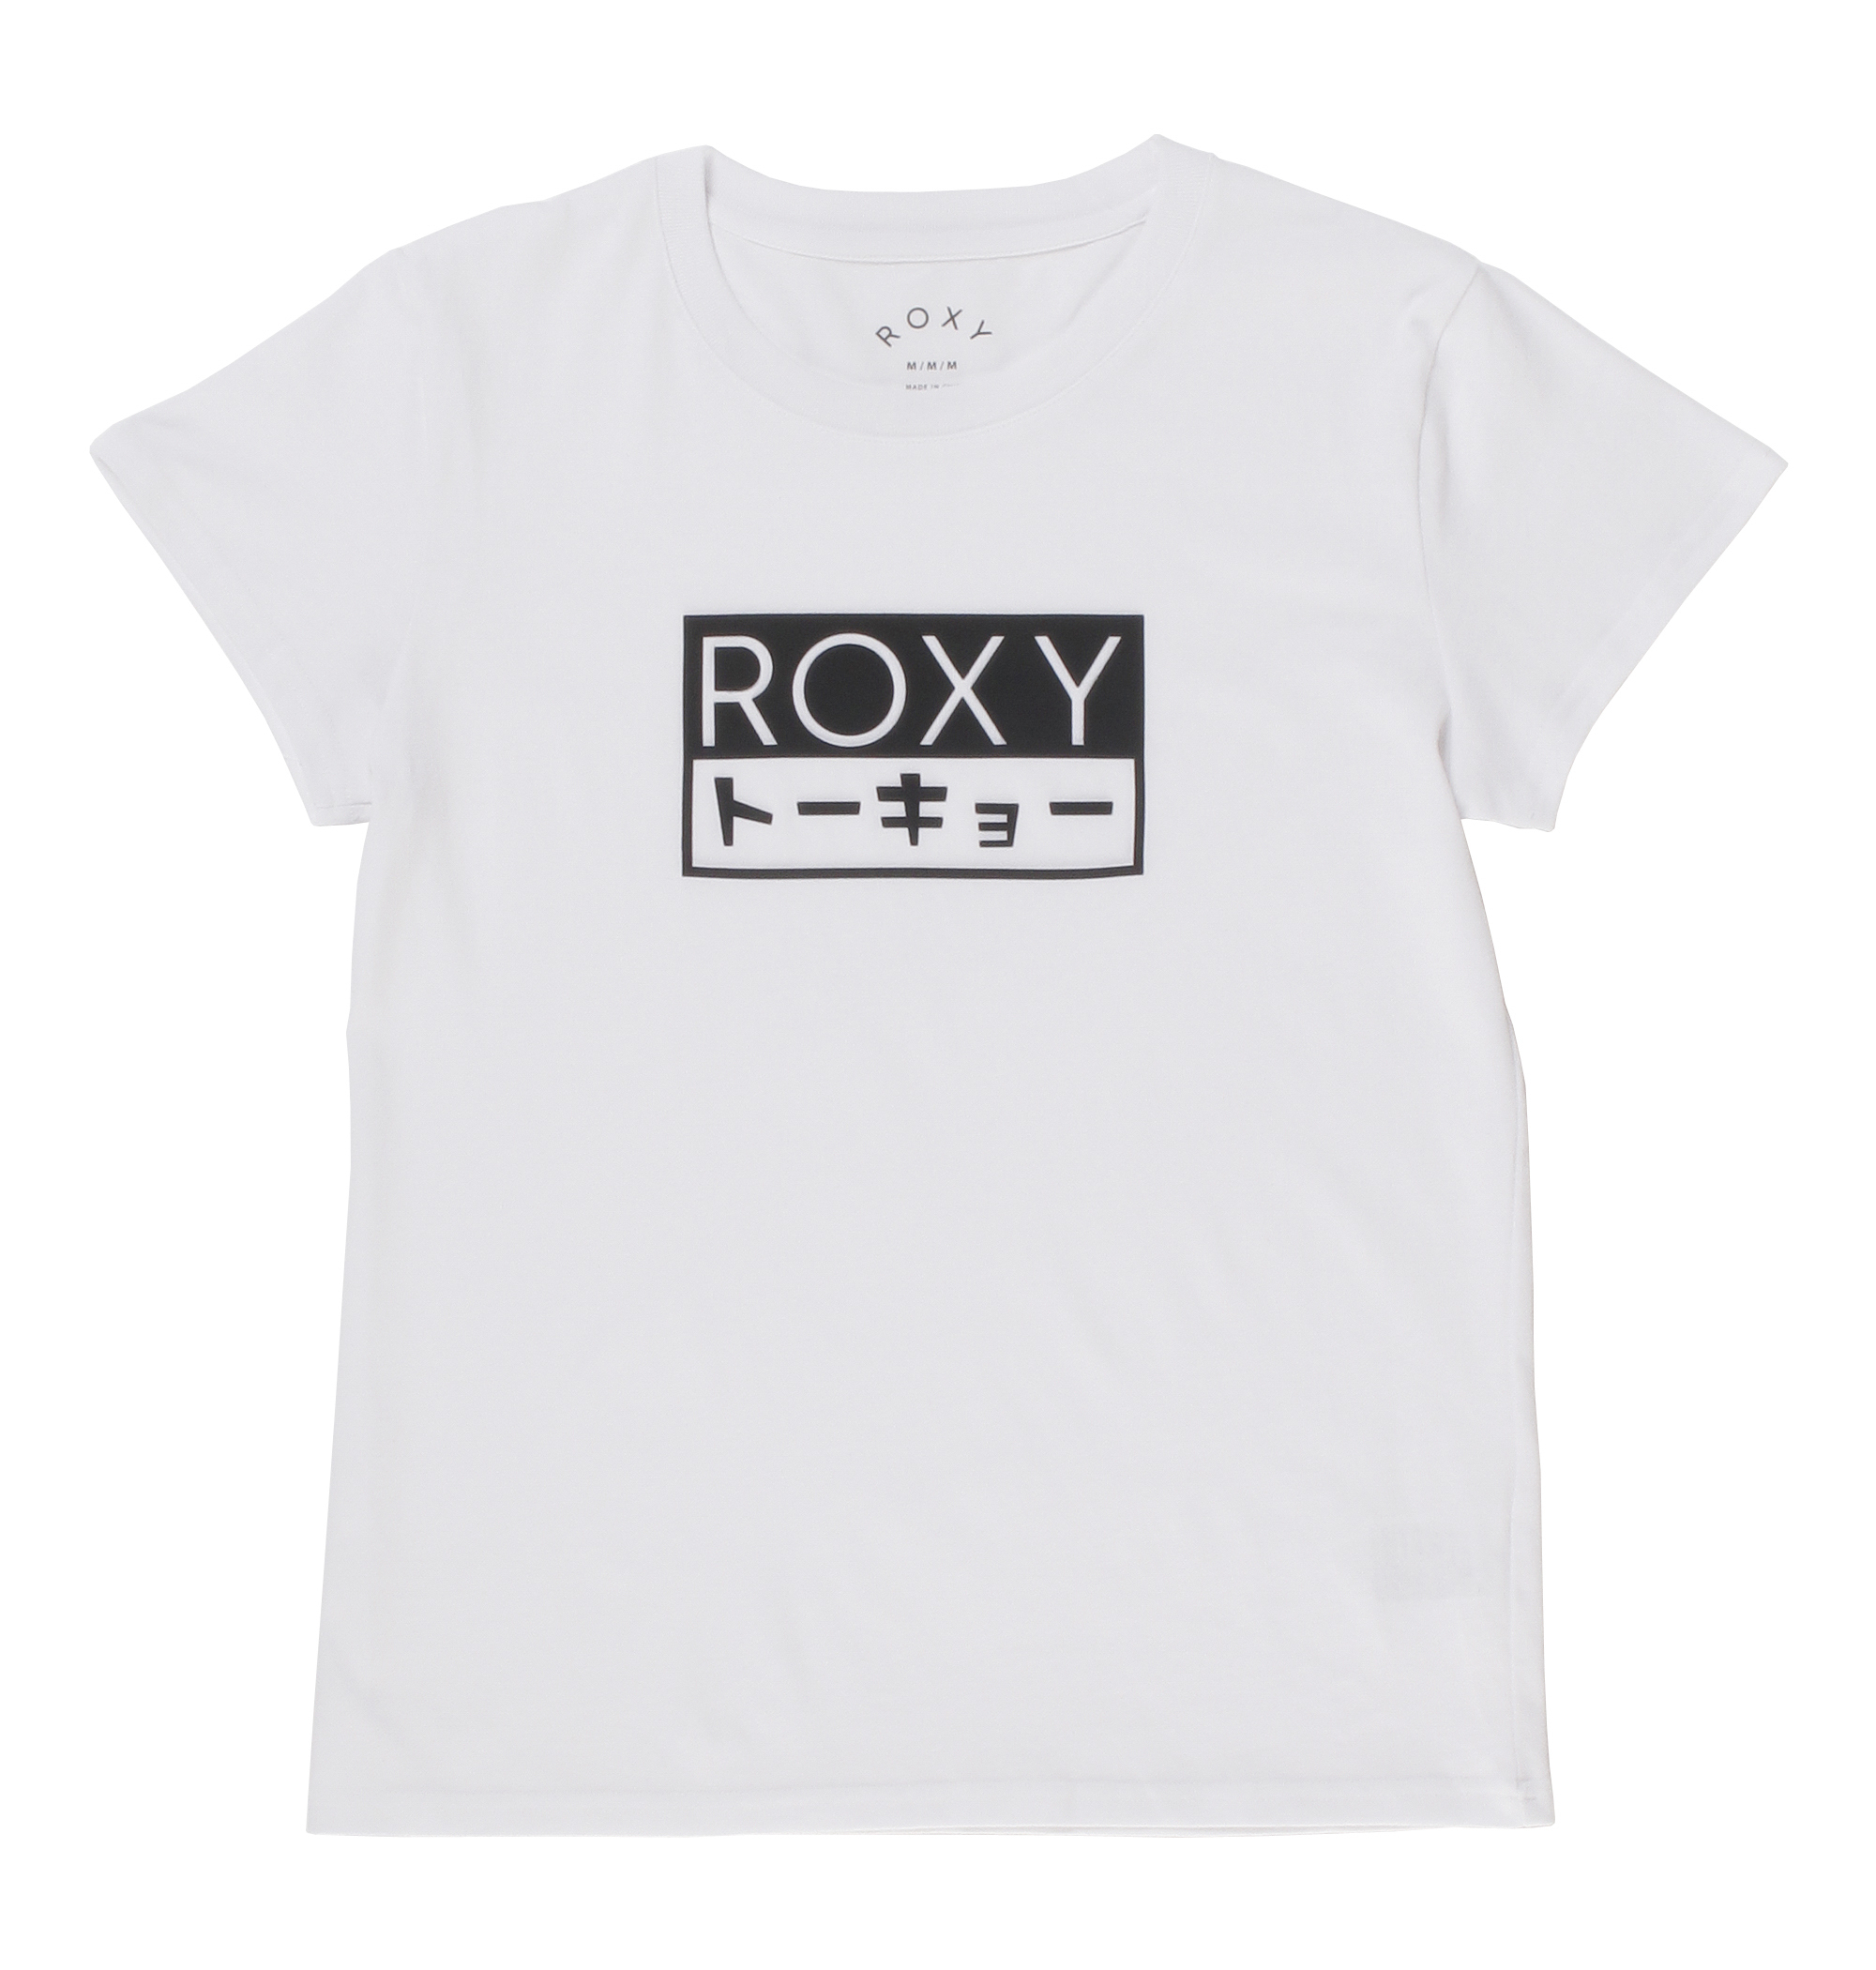 30%OFF！＜Roxy＞ROXY BOX TEE ボックス状のラバープリントにカタカナロゴを取り入れ、目を引くデザインに仕上げたTシャツ画像